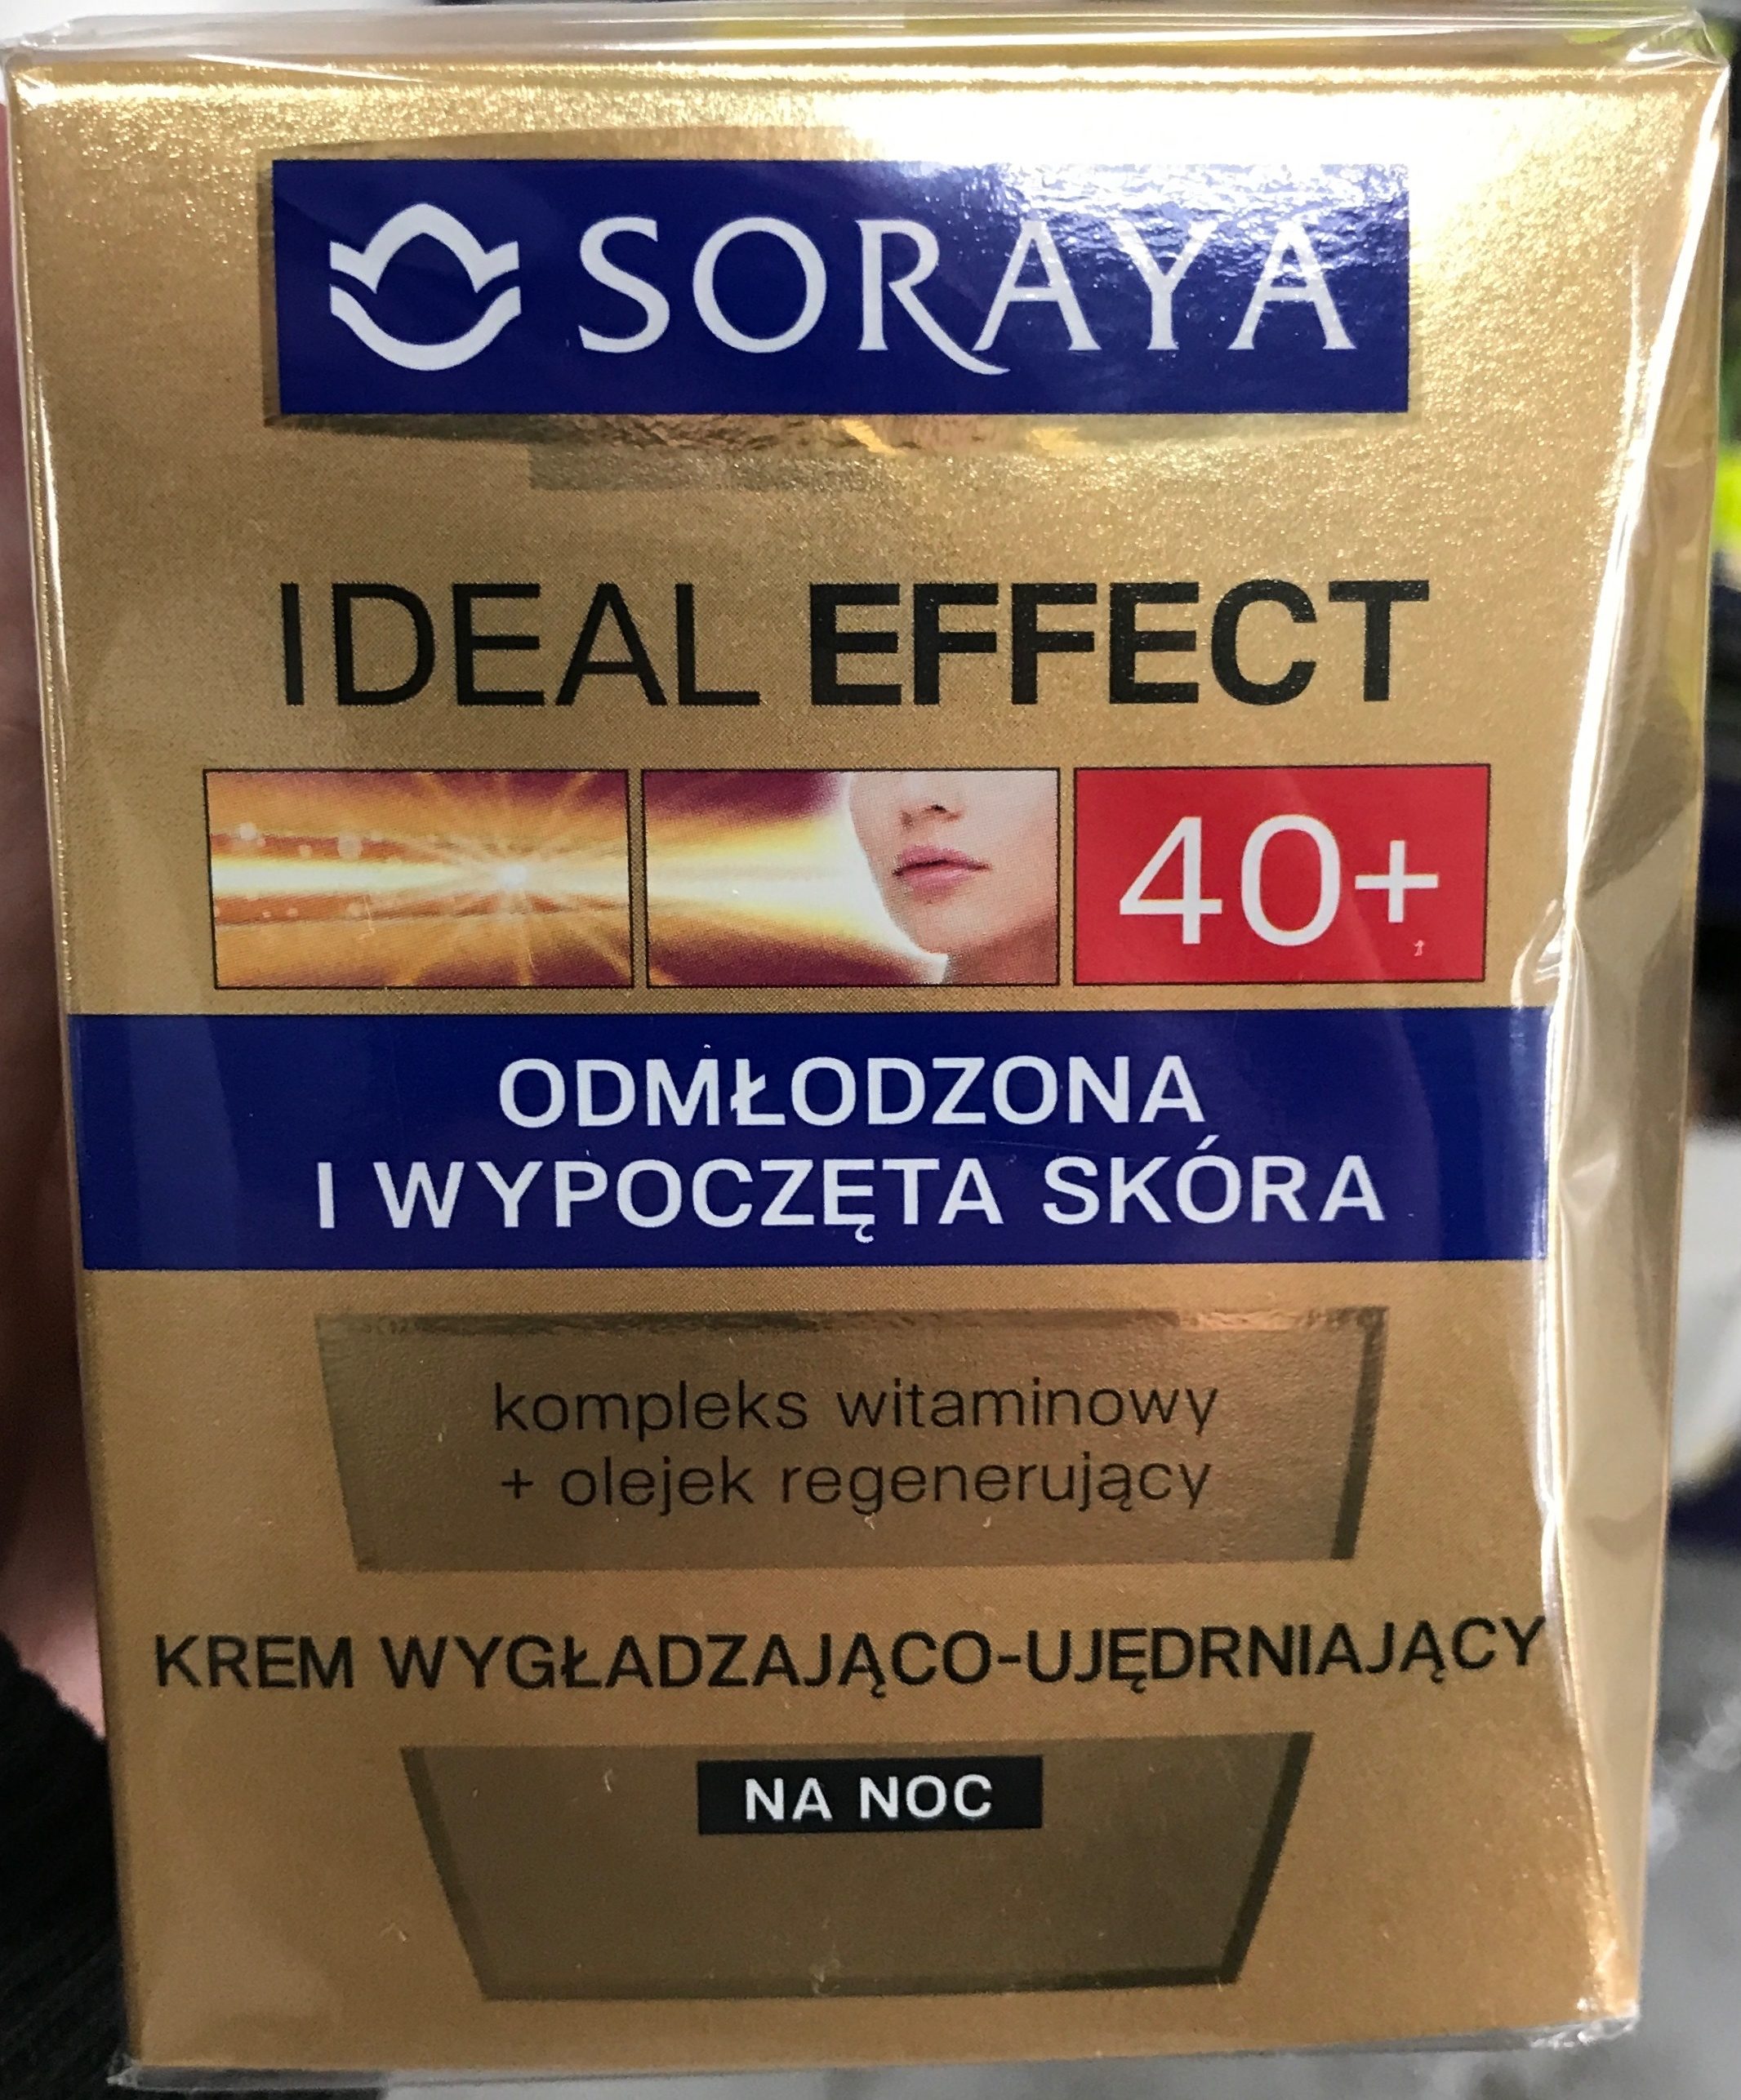 Ideal Effect 40+ Krem wygładzająco-ujędrniający - Product - pl